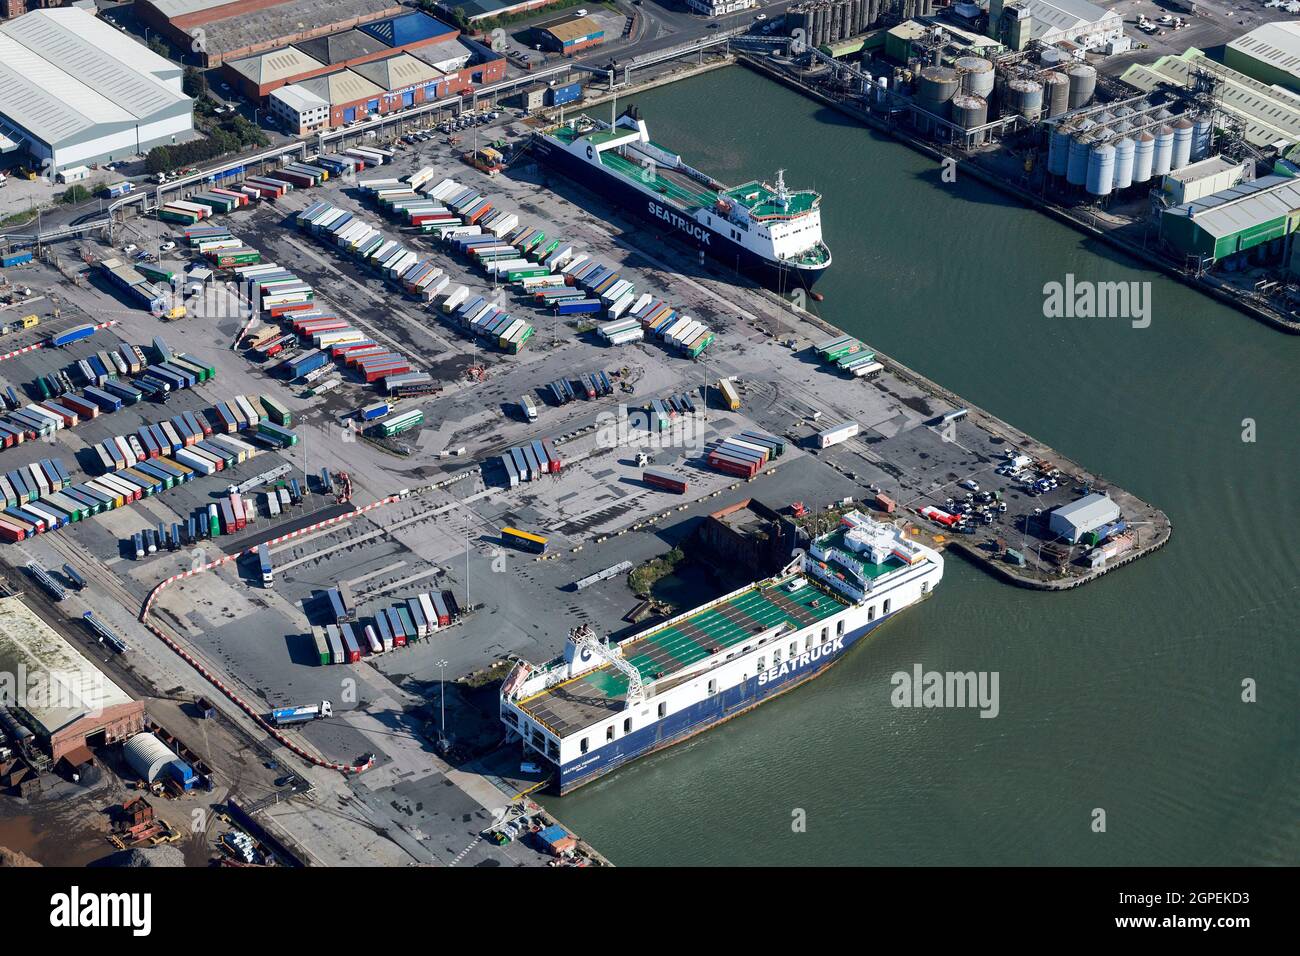 Seatruck traghetti che caricano container per viaggiare in Irlanda a Seaforth Docks, Liverpool, Merseyside, North West England, UK Foto Stock